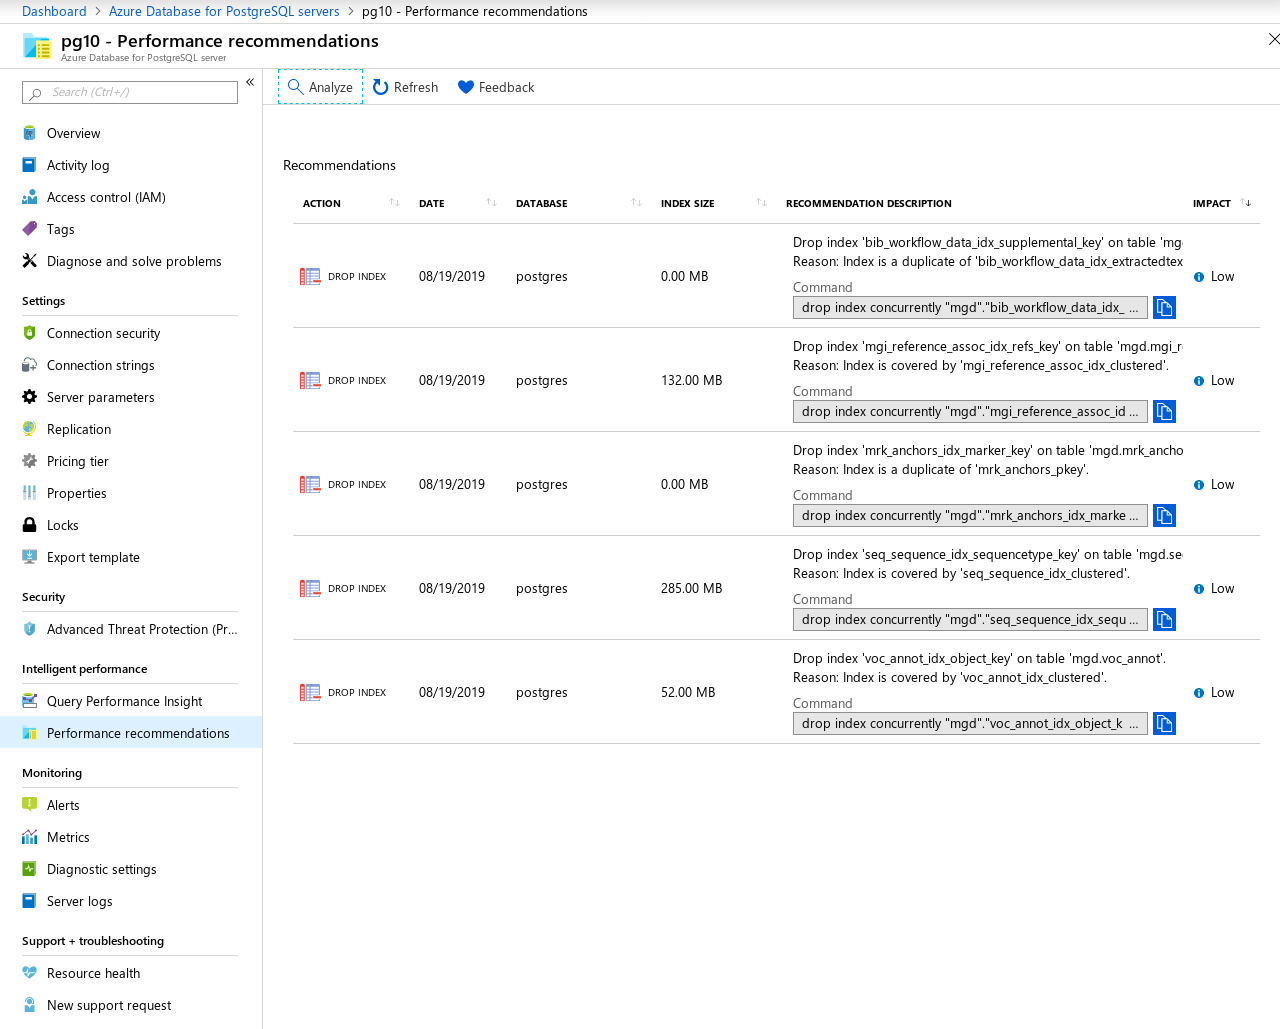 Azure Database for PostgreSQL: Single server --- Performance Recommendations screen